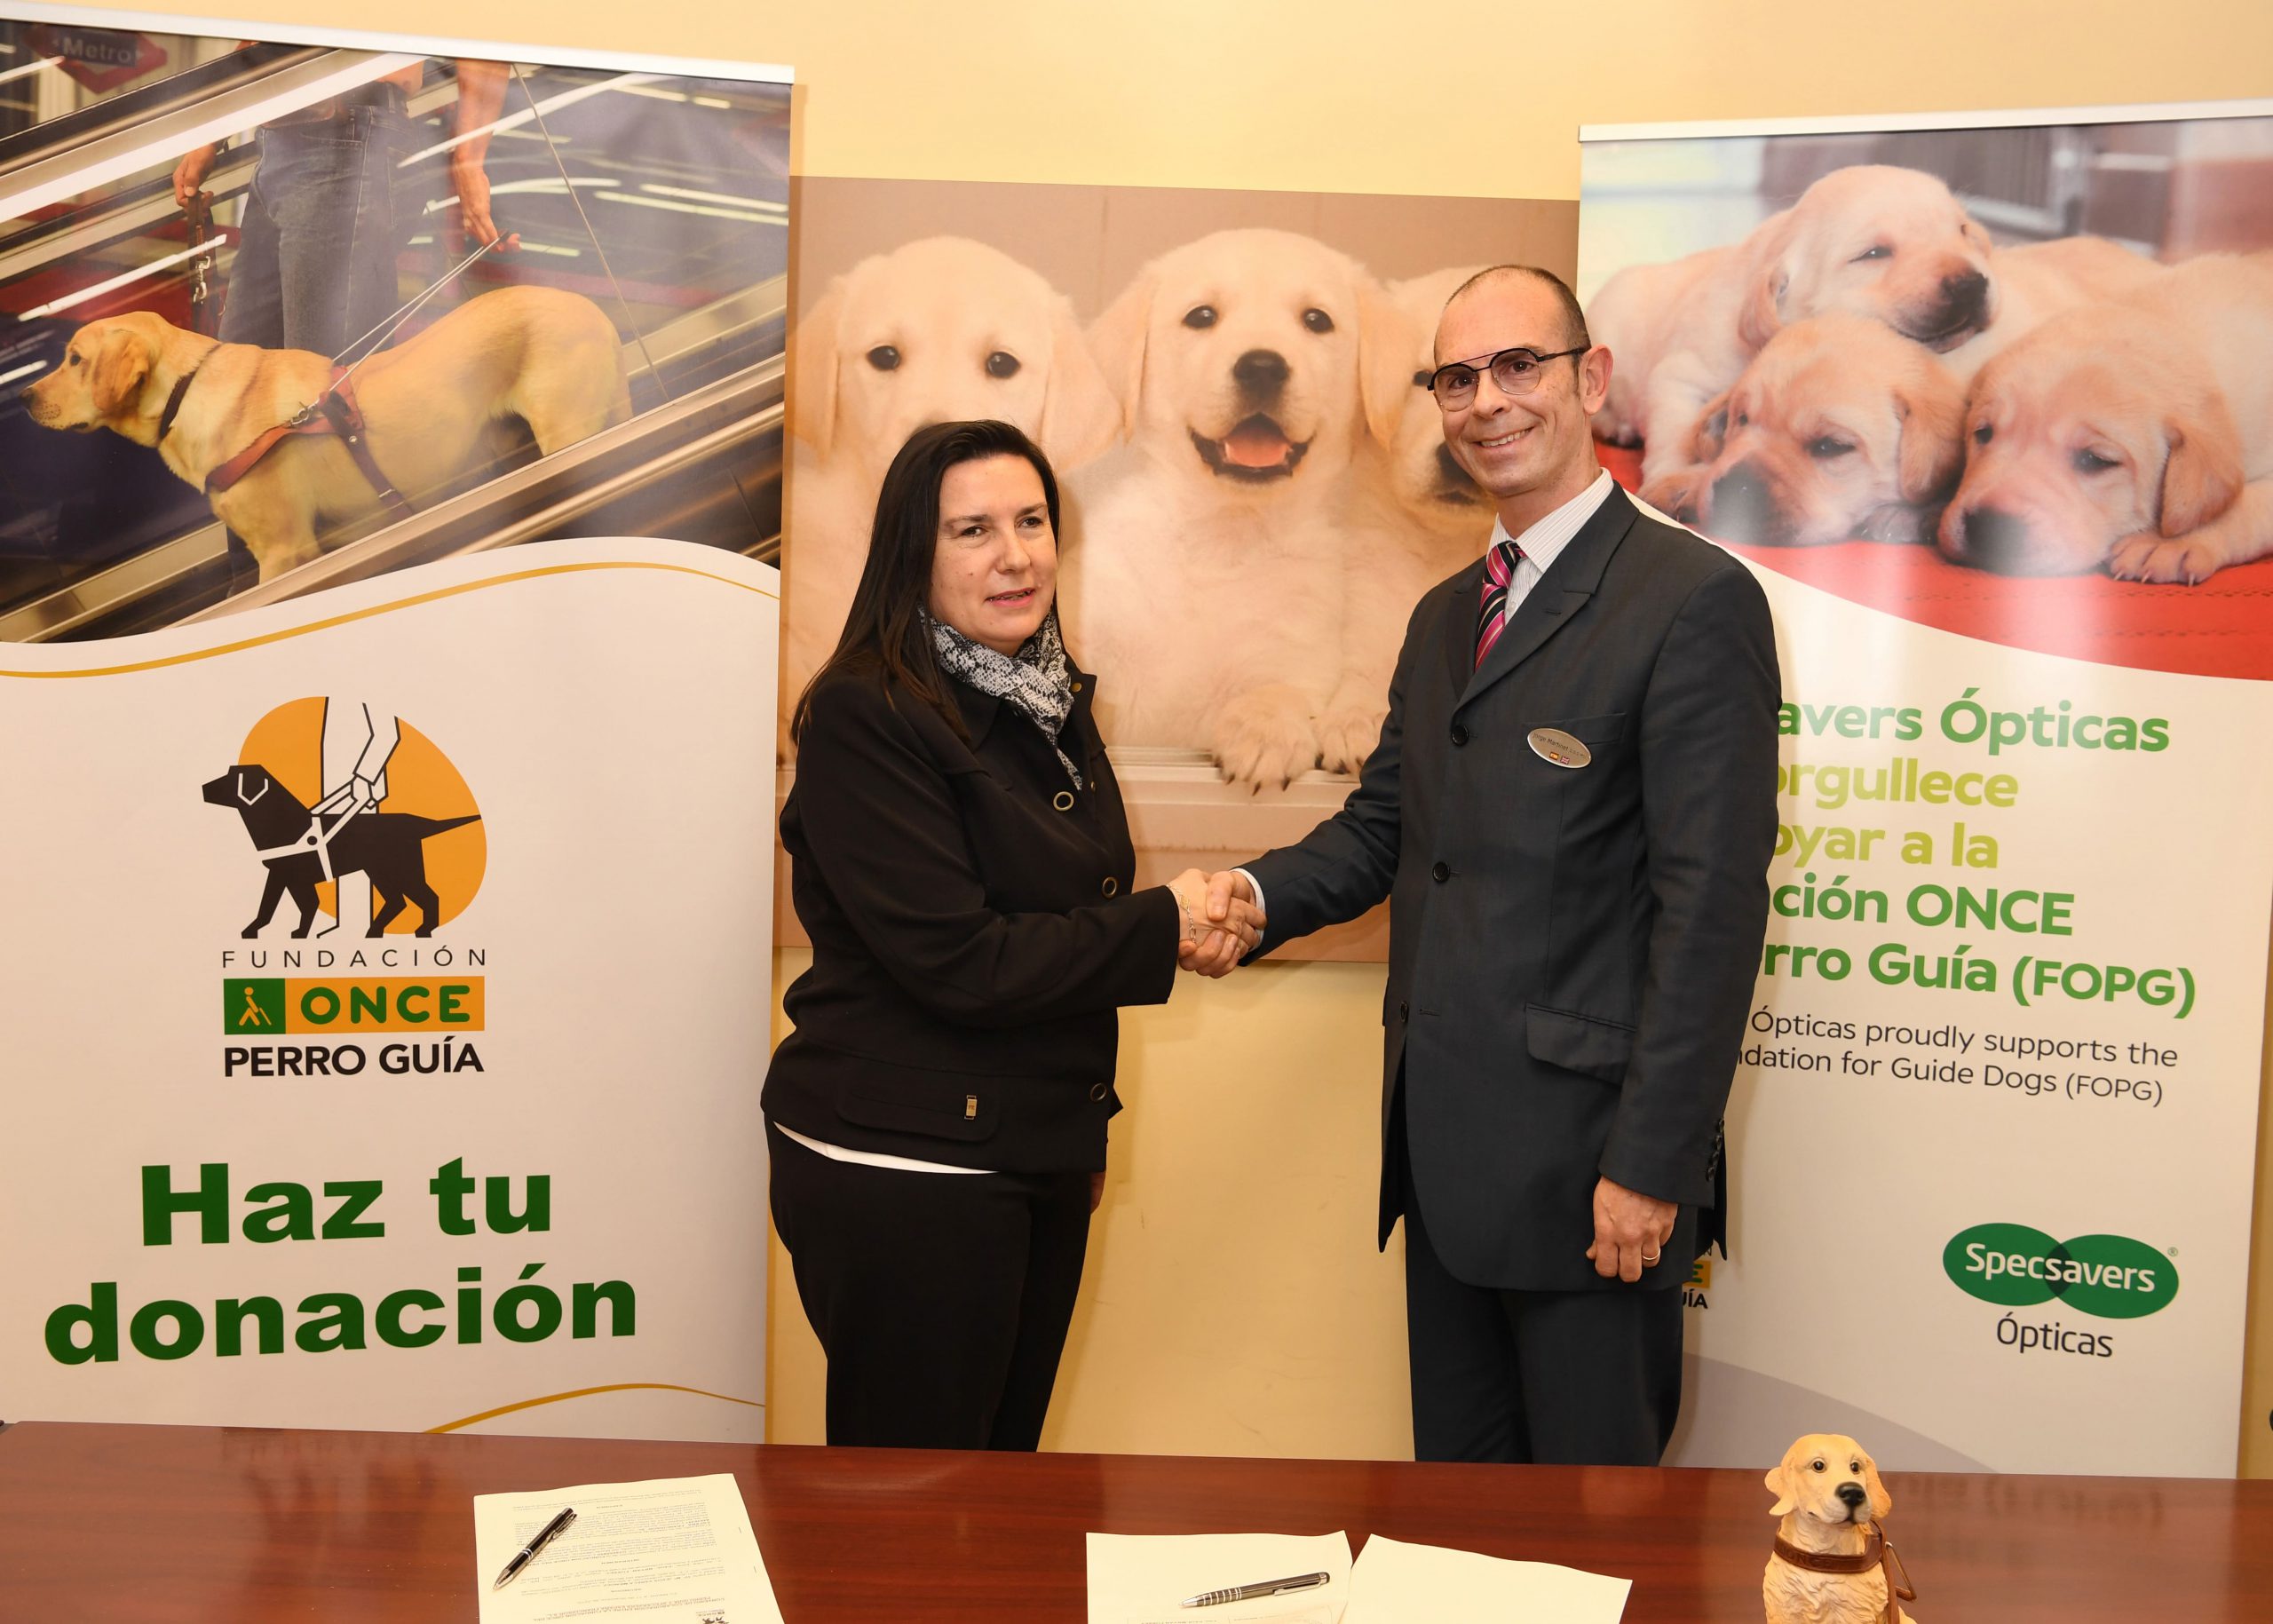 Specsavers Ópticas recaudará fondos para el adiestramiento de los perros guía de la ONCE